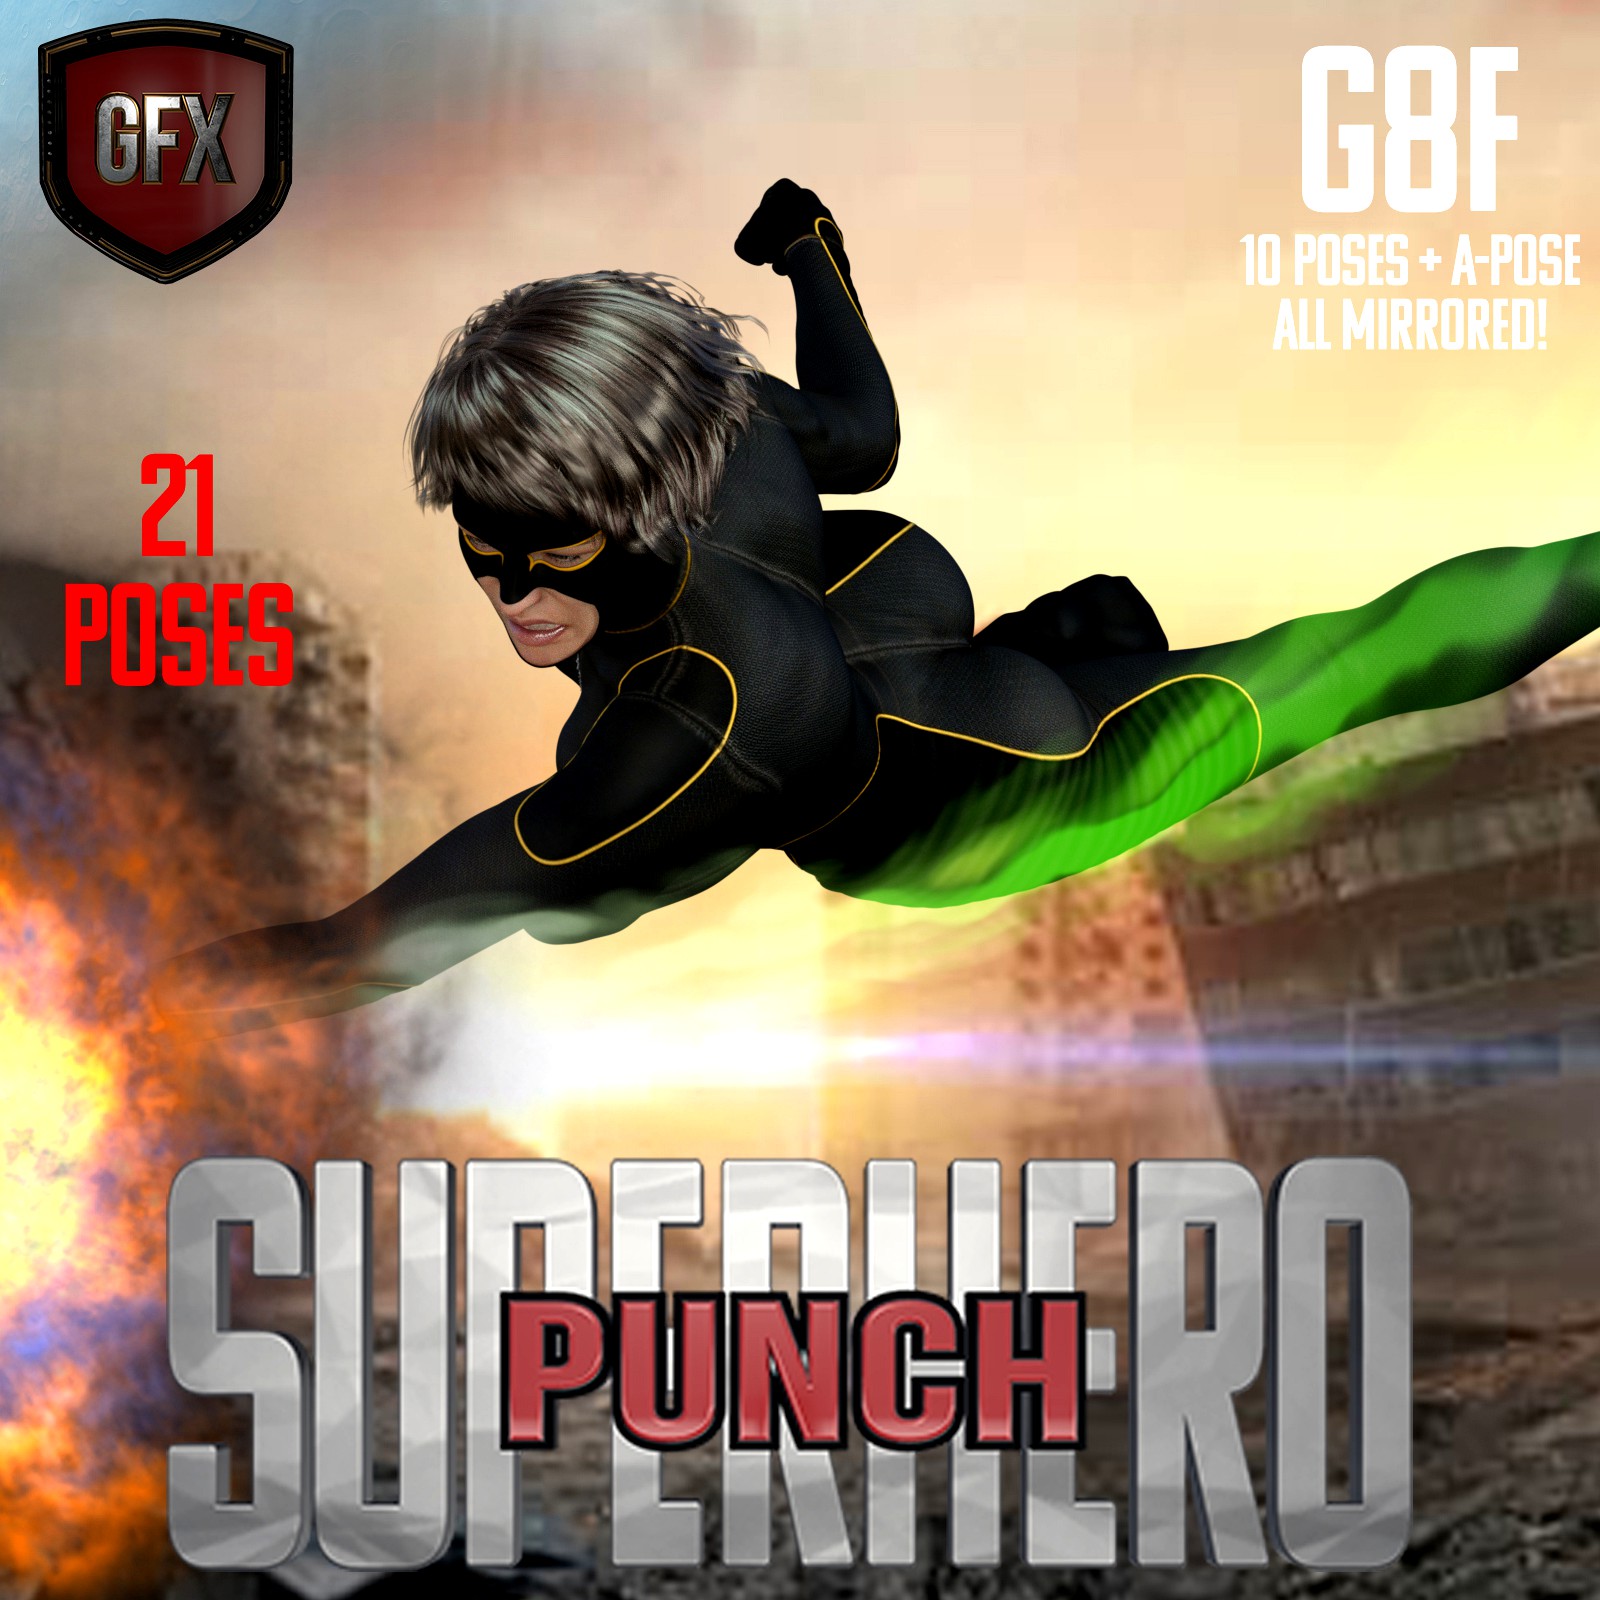 SuperHero Punch for G8F Volume 1